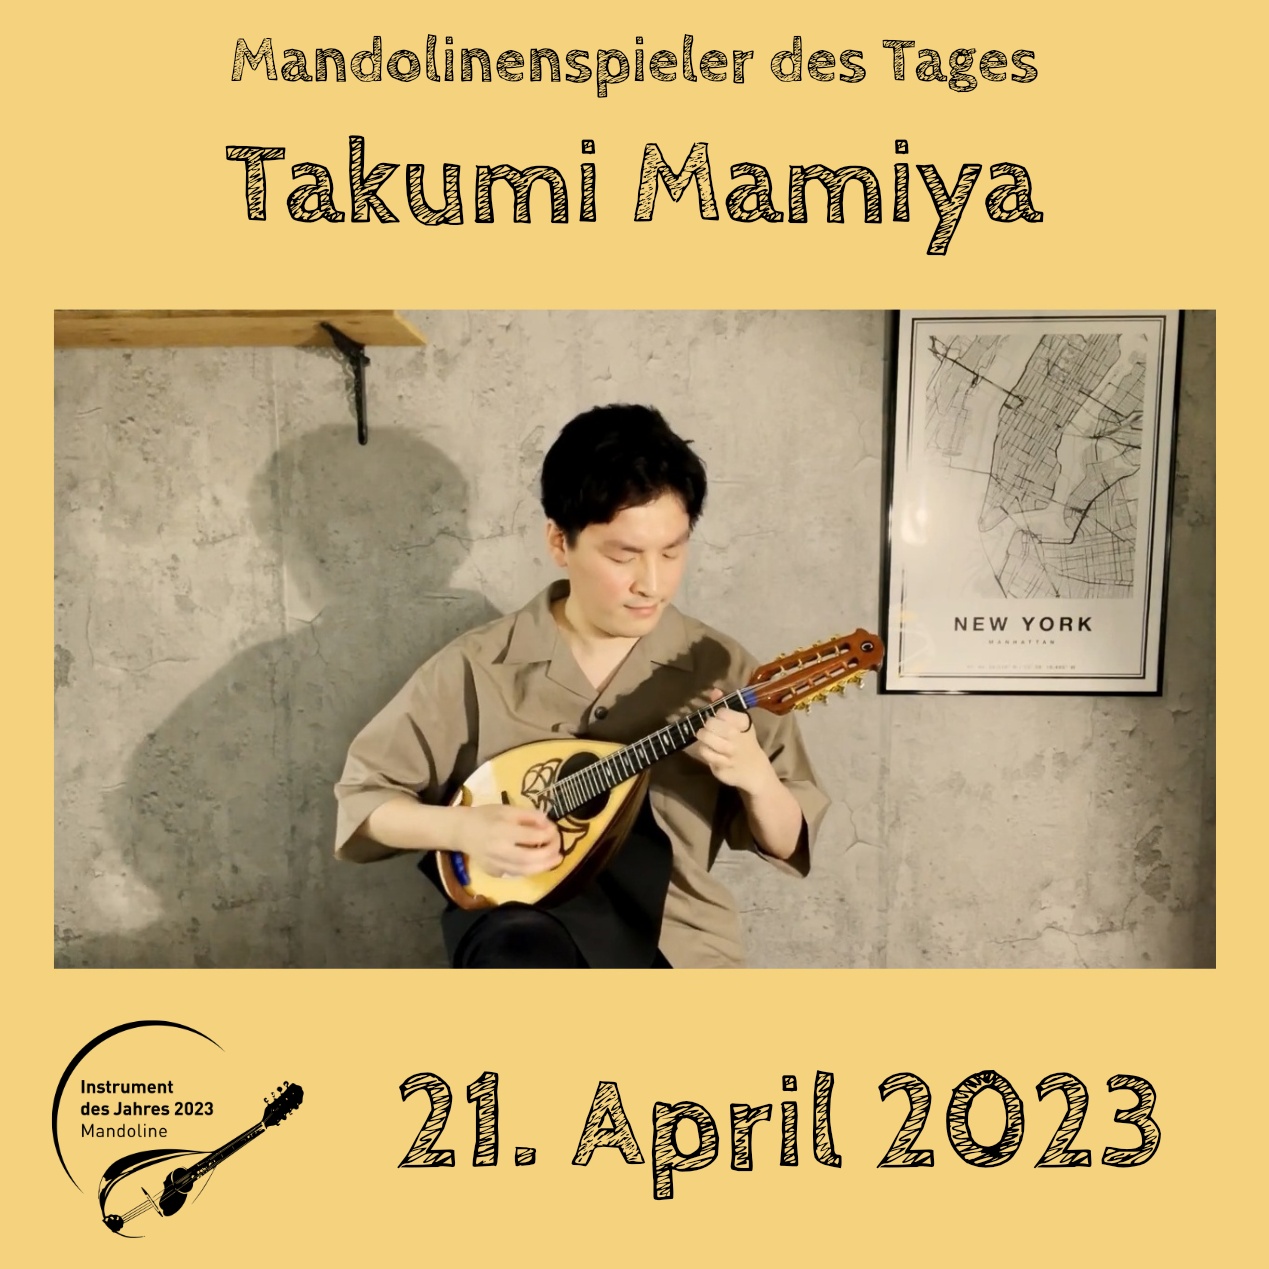 Takumi Mamiya Instrument des Jahres 2023 Mandolinenspieler Mandolinenspielerin des Tages